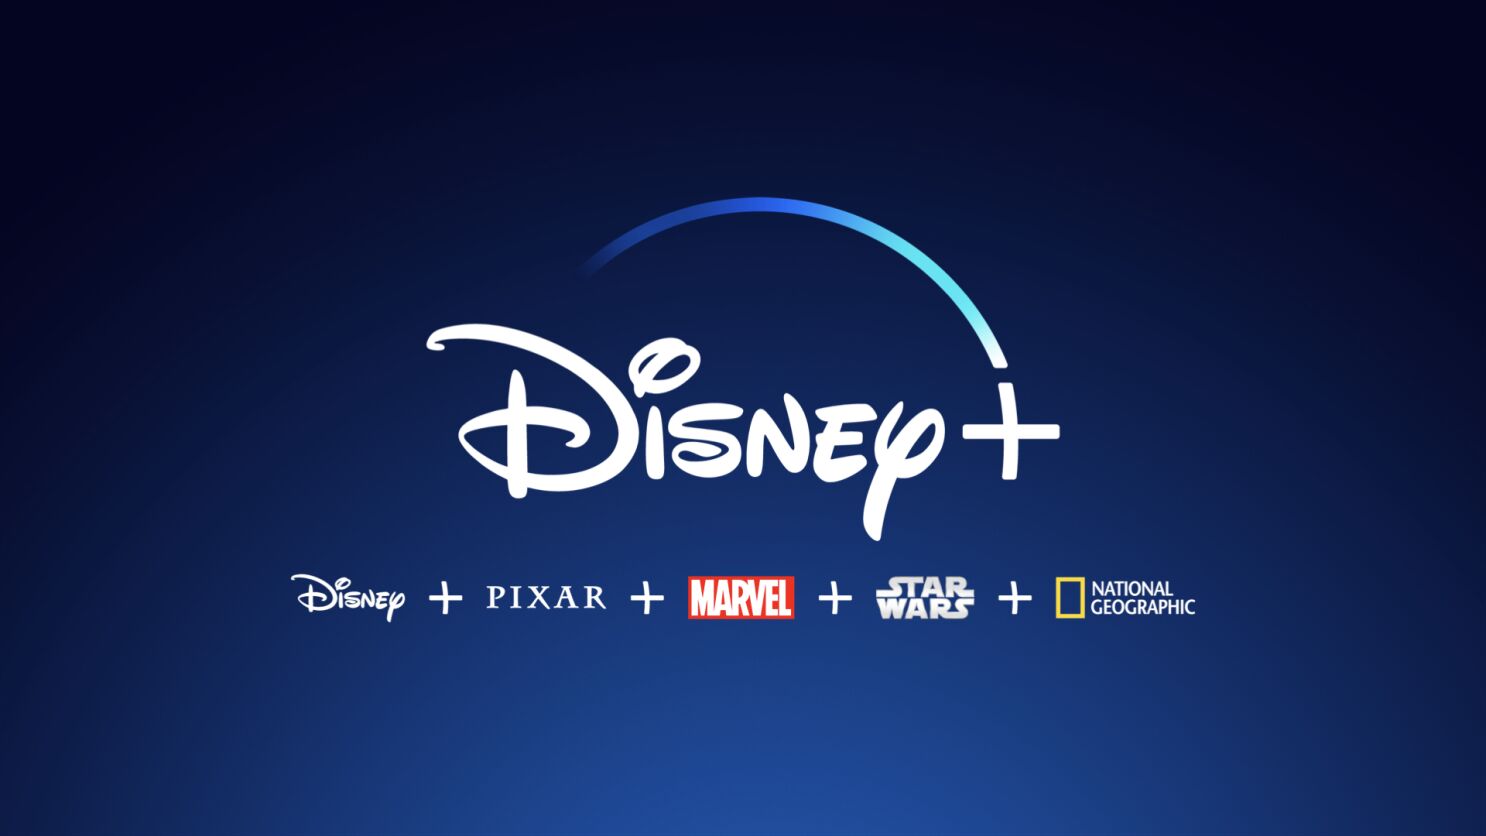 Disney Plus sigue los pasos de Netflix y comienza a limitar cuentas compartidas